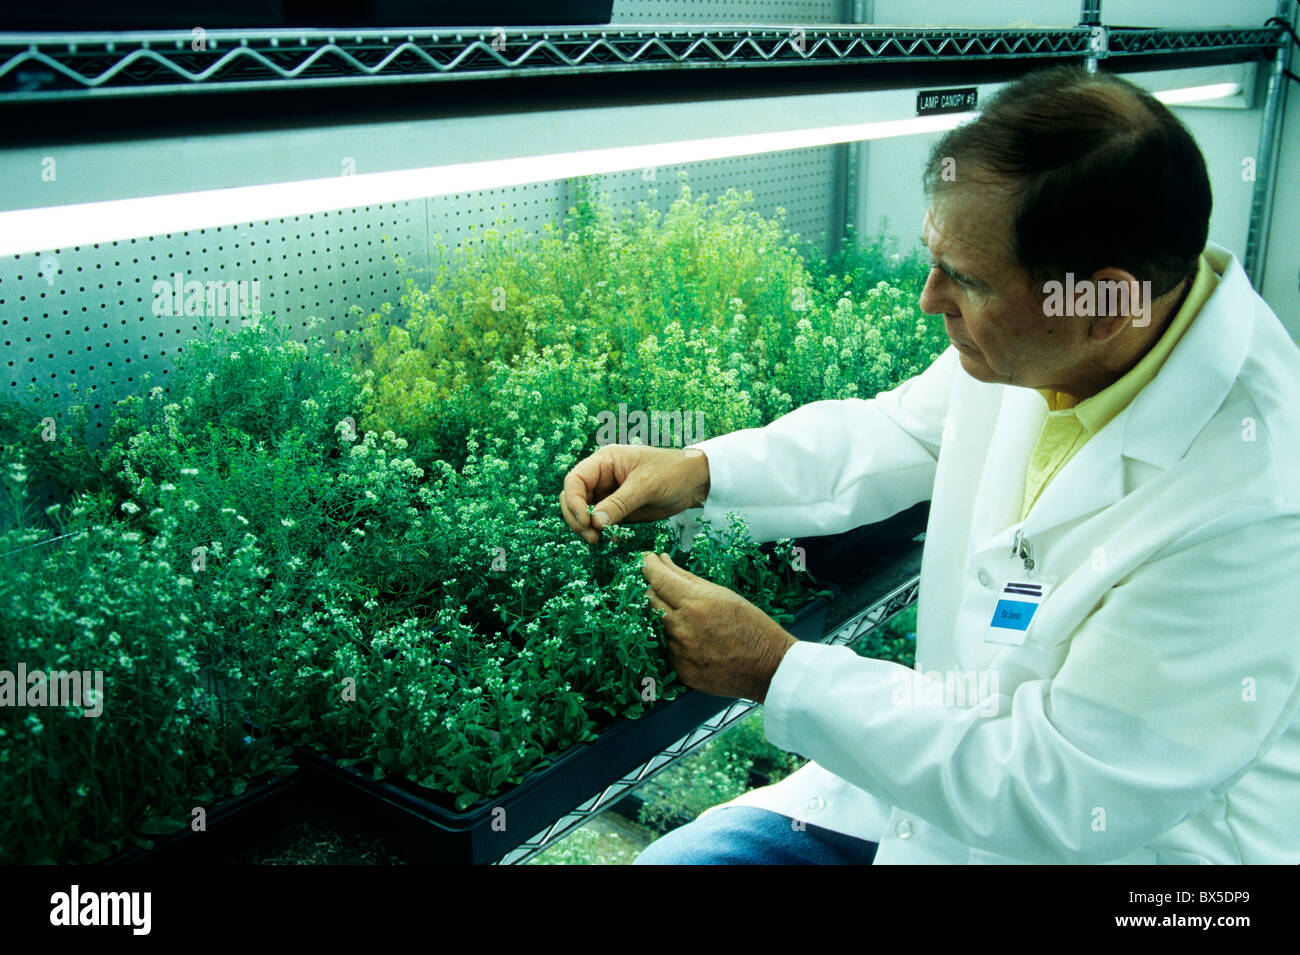 Опыты над растениями. Исследование растений. Лаборатория растений. Ученые с растениями. Лаборатория лекарственных растений.